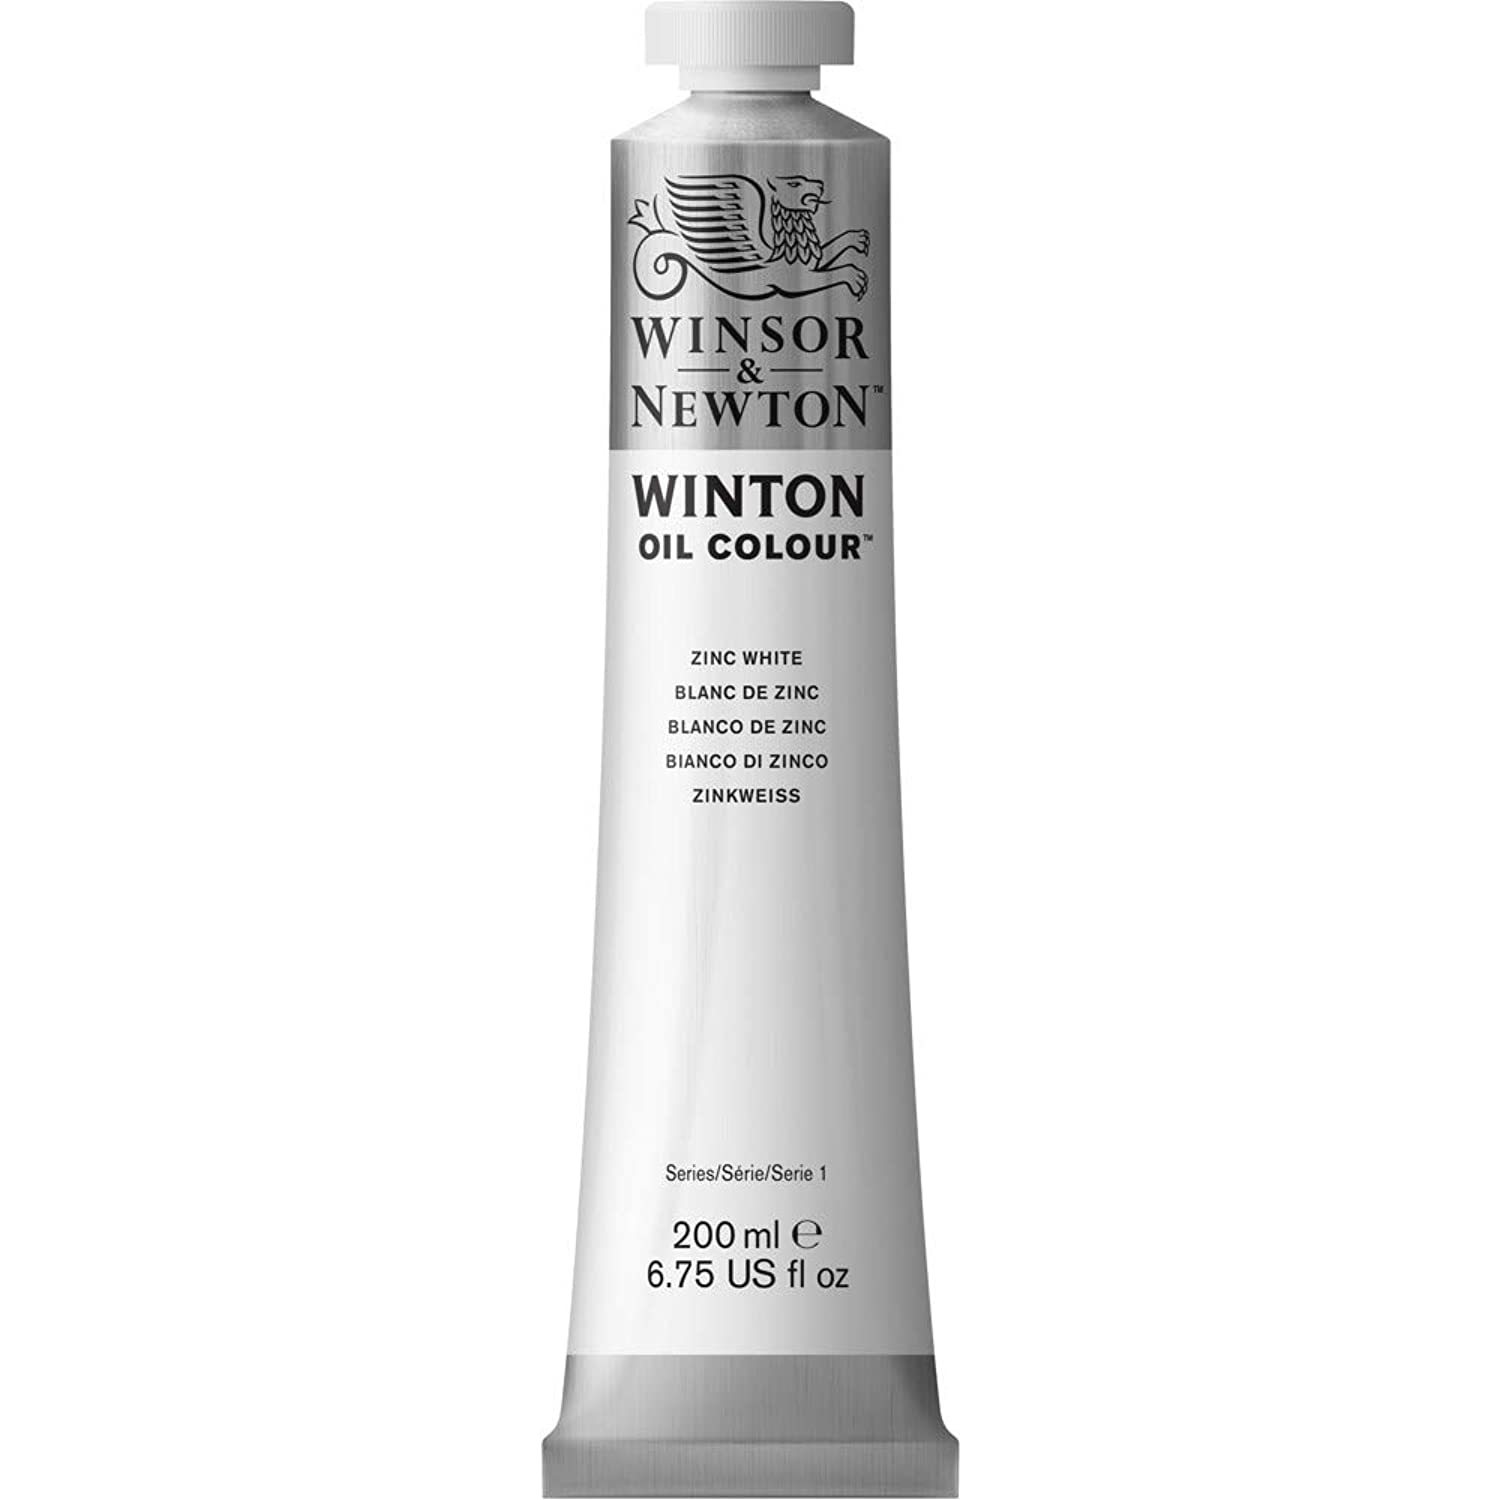 Winsor & Newton Winton Oil Color Paint, 200-ml Tube, Zinc White